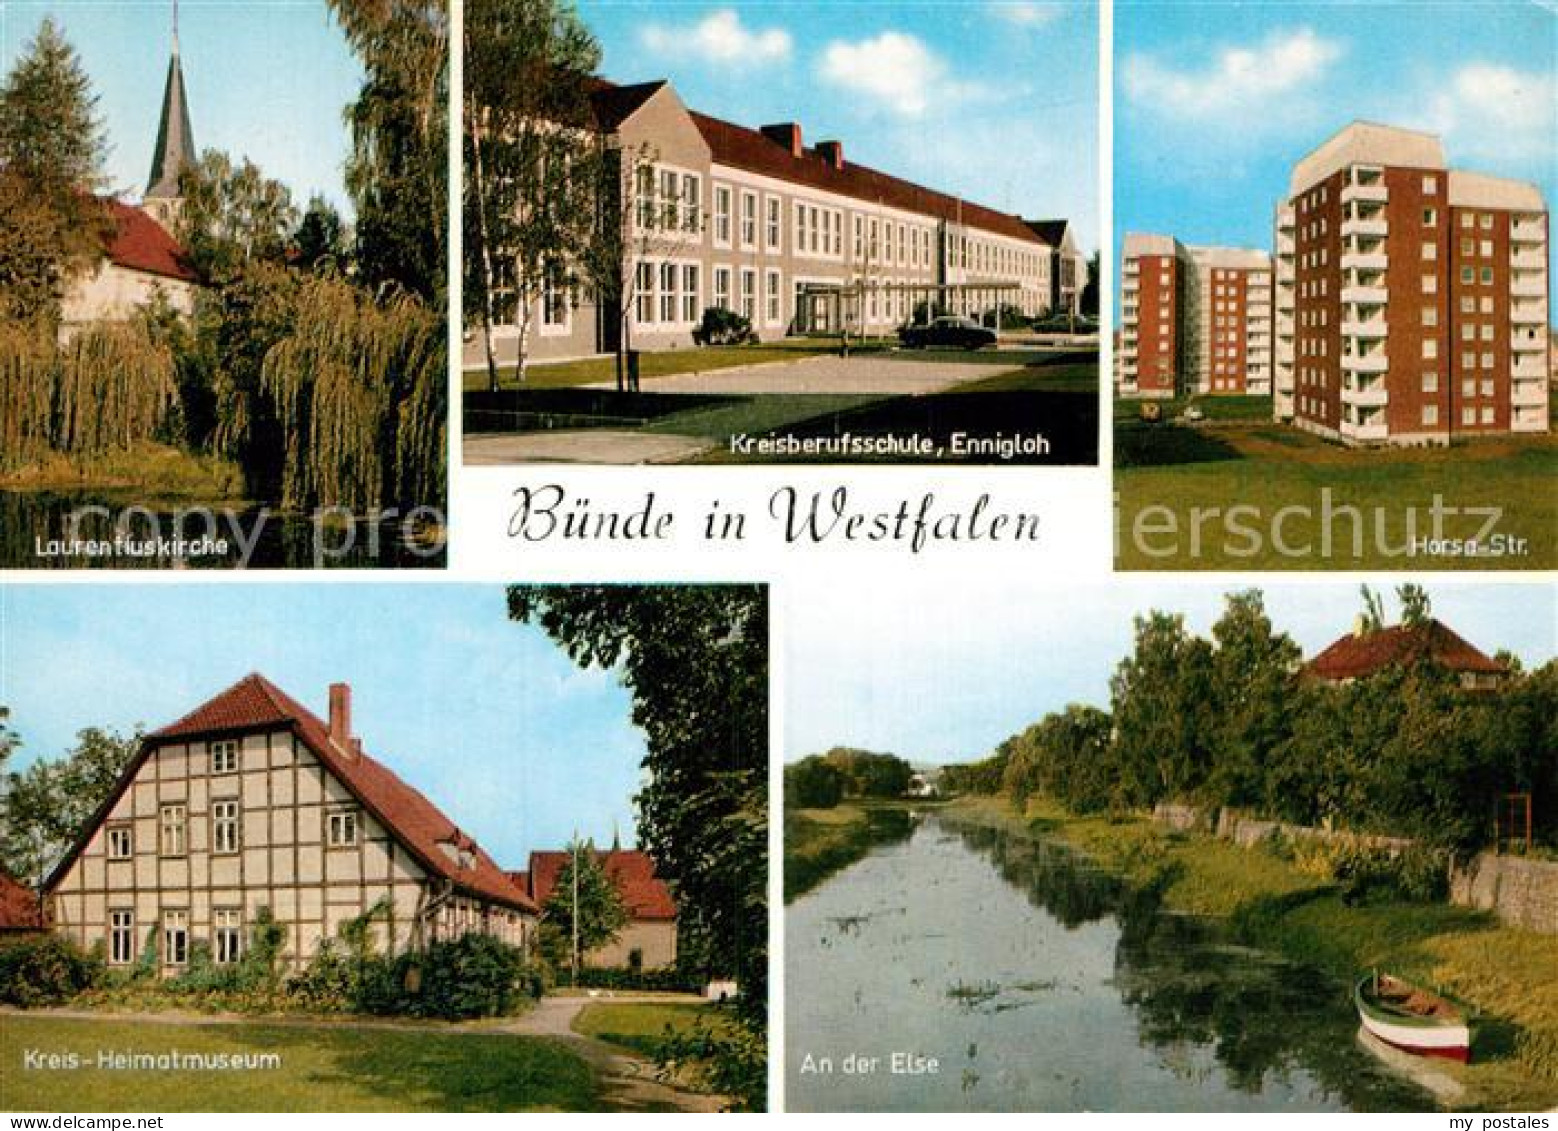 73000946 Buende Westfalen Horsa Strasse Kreisberufsschule Ennigloh Laurentiuskir - Bünde